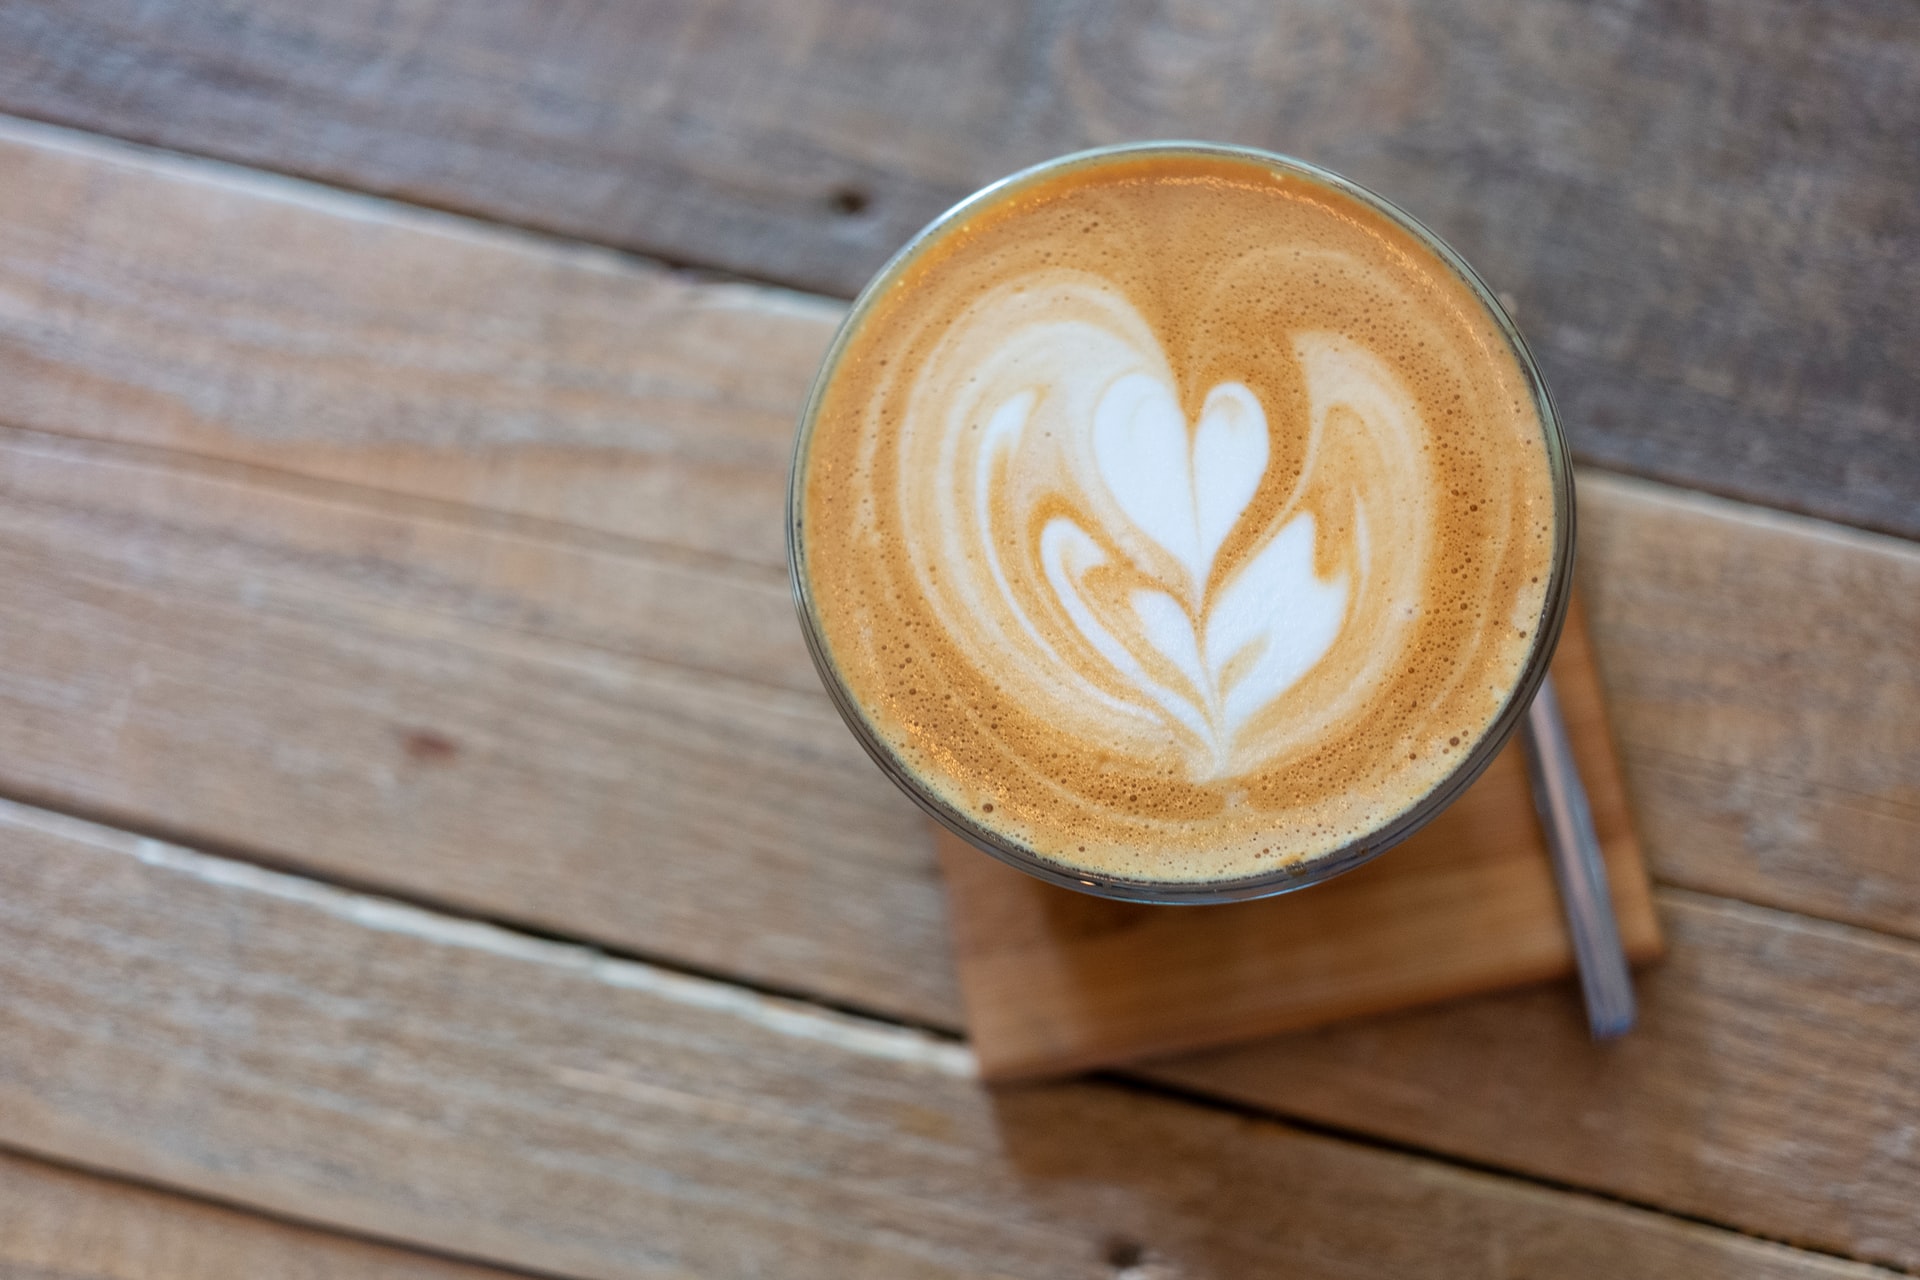 Polcari’s Coffee: A Delicious Institution Near The Sudbury